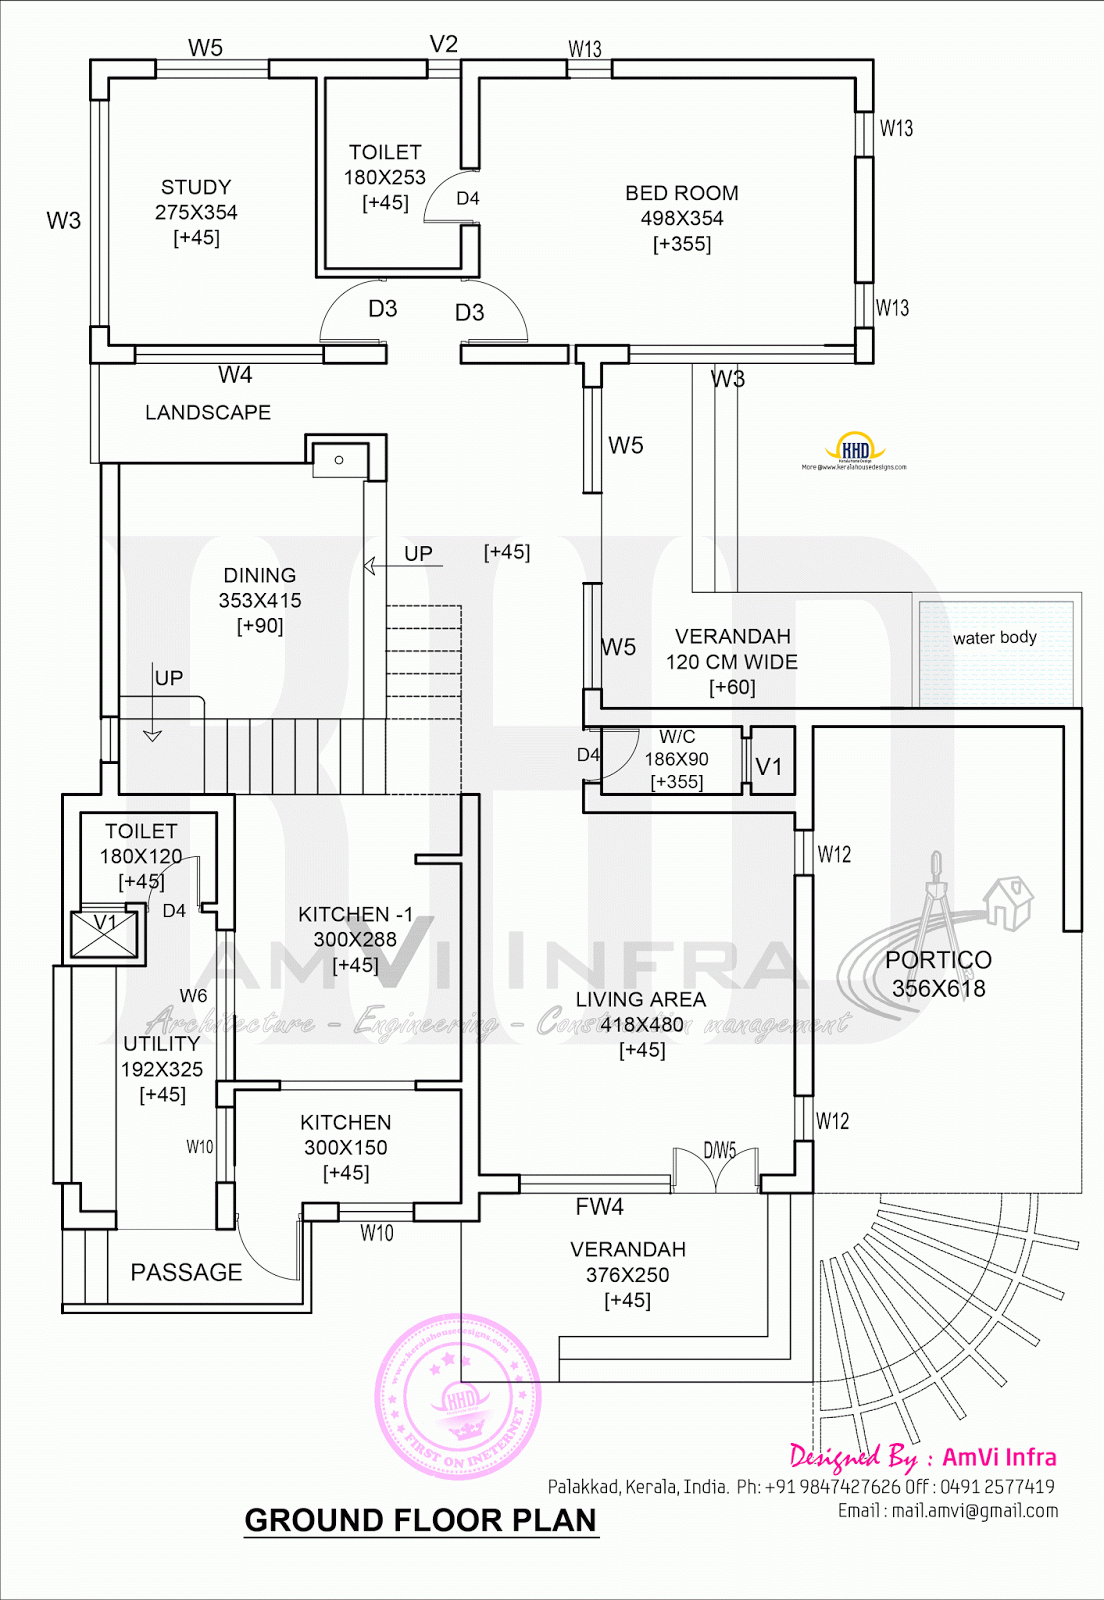 floor-plans-ground-floor-plan-level-homes-vrogue